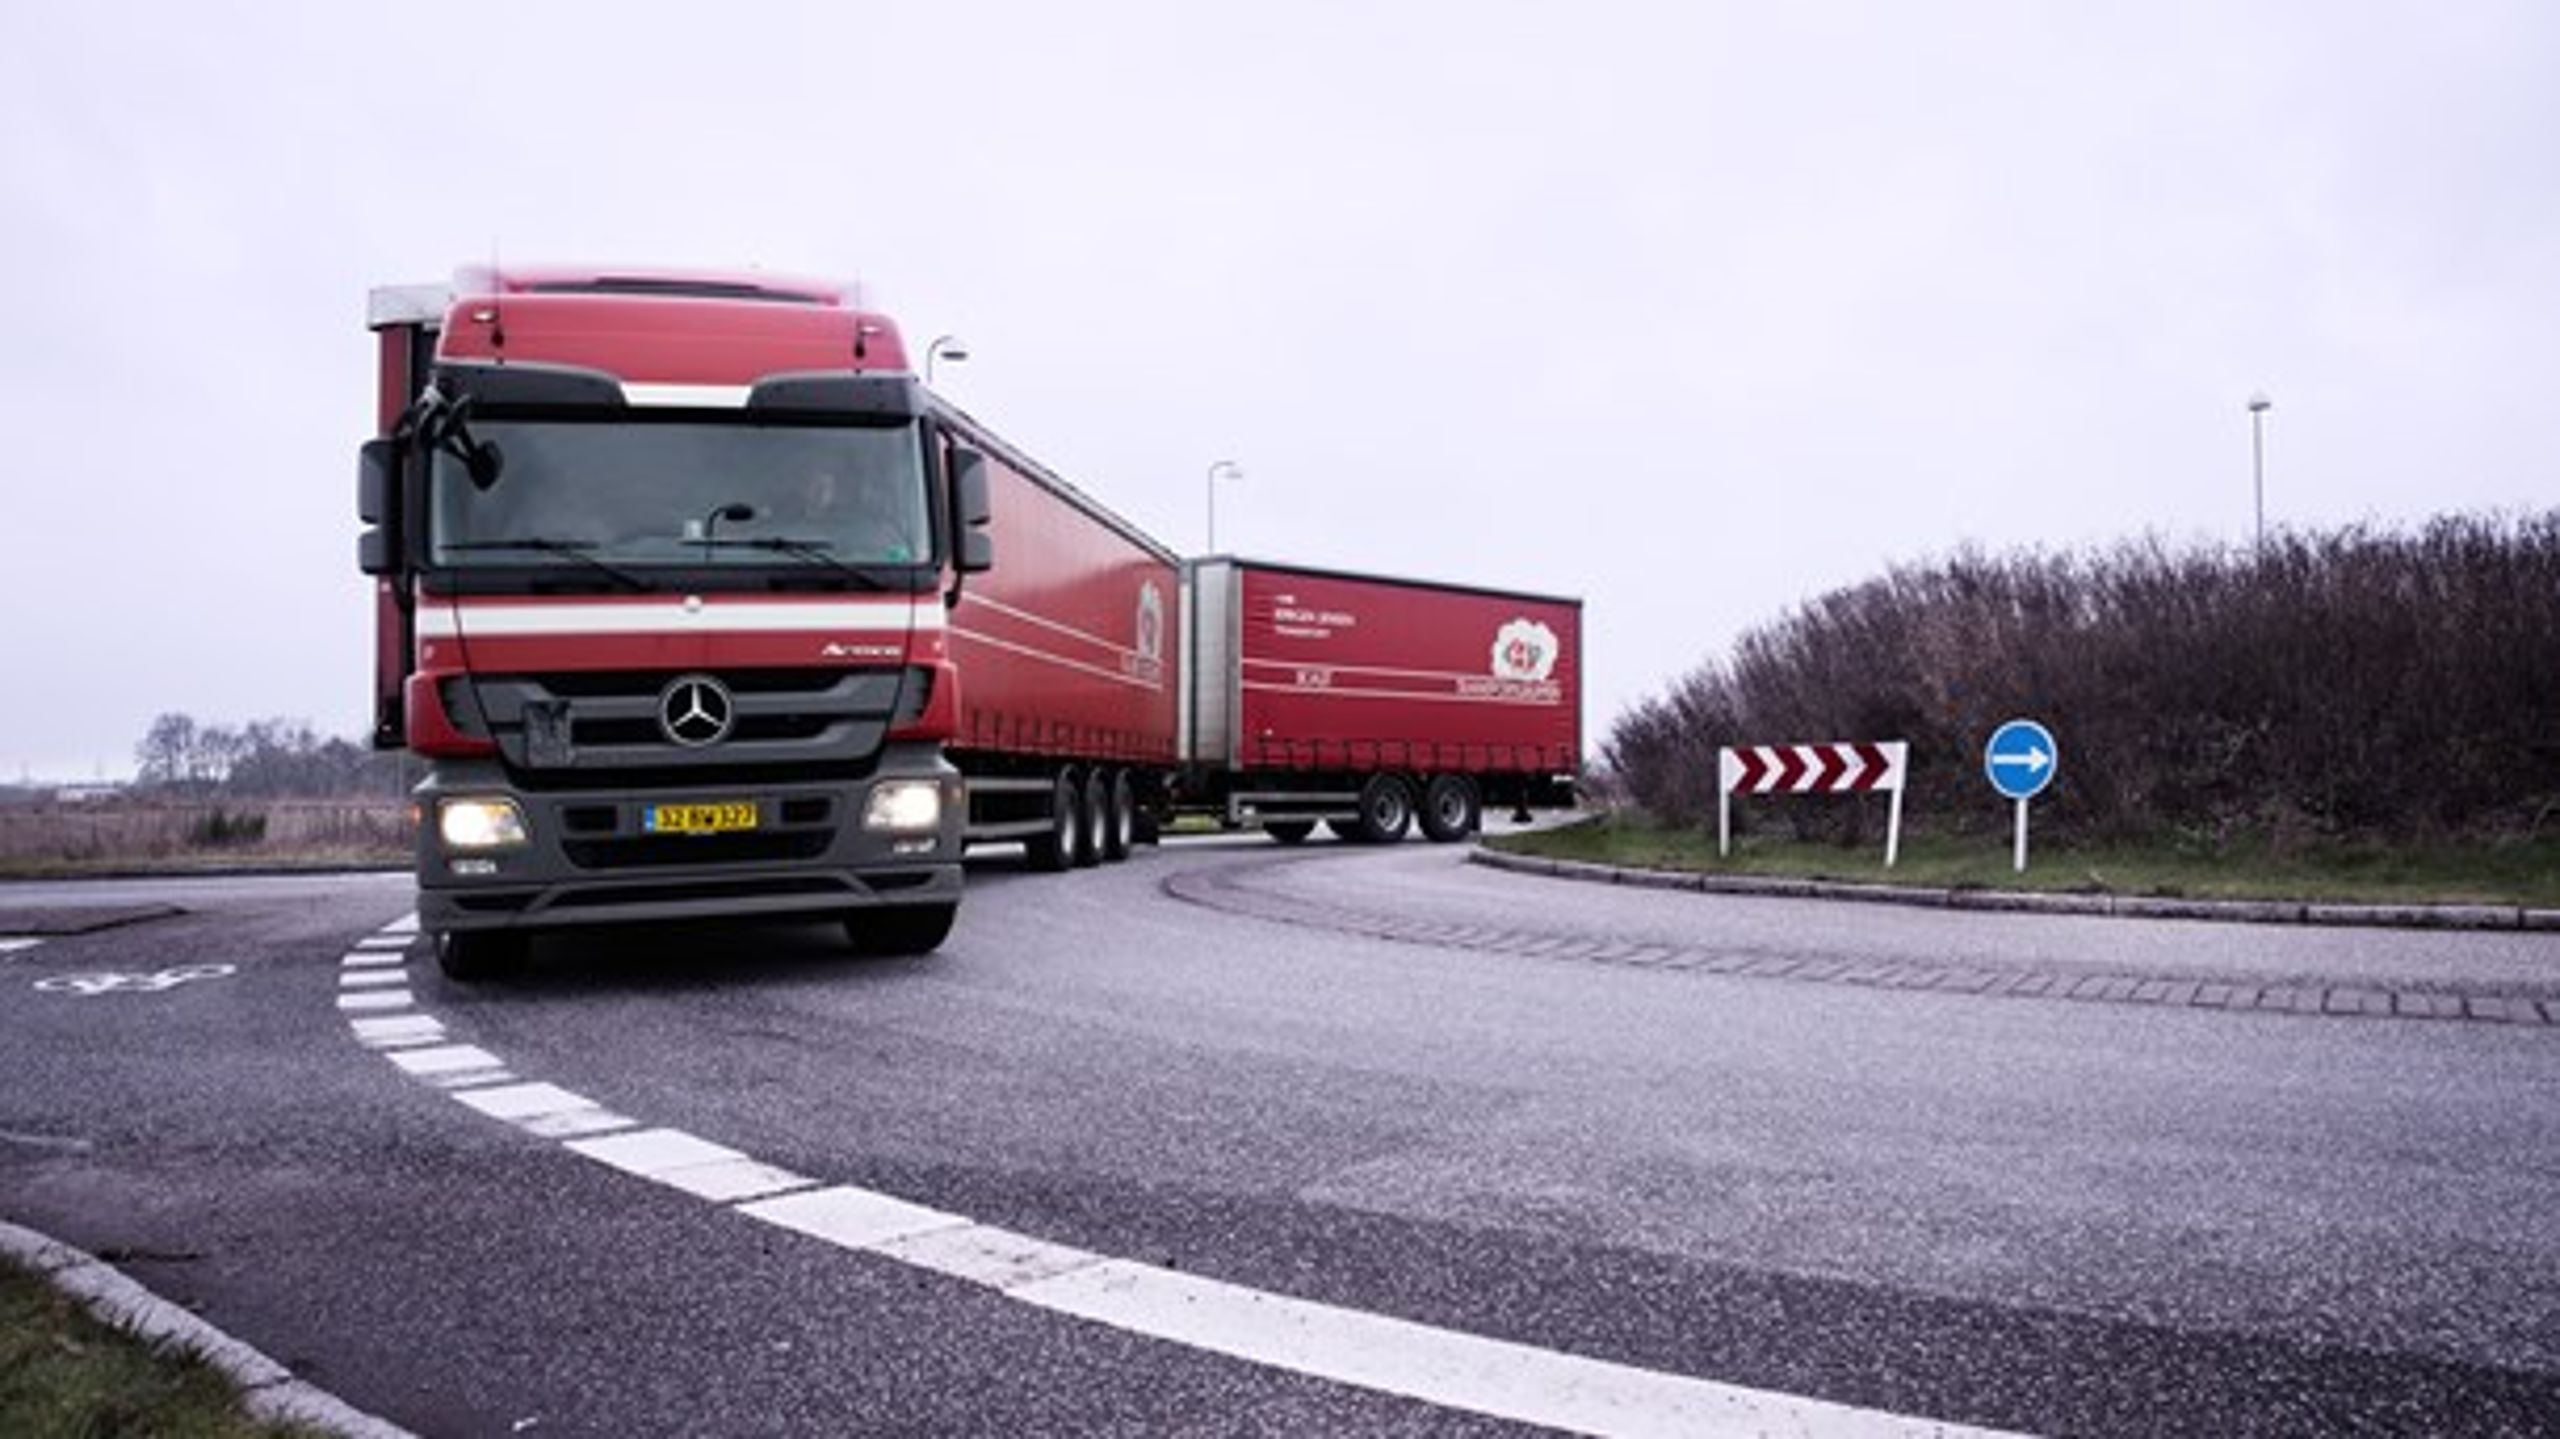 Regeringens udkast til nye regler for køre- og hviletid for lastbilchauffører har netop været i høring.